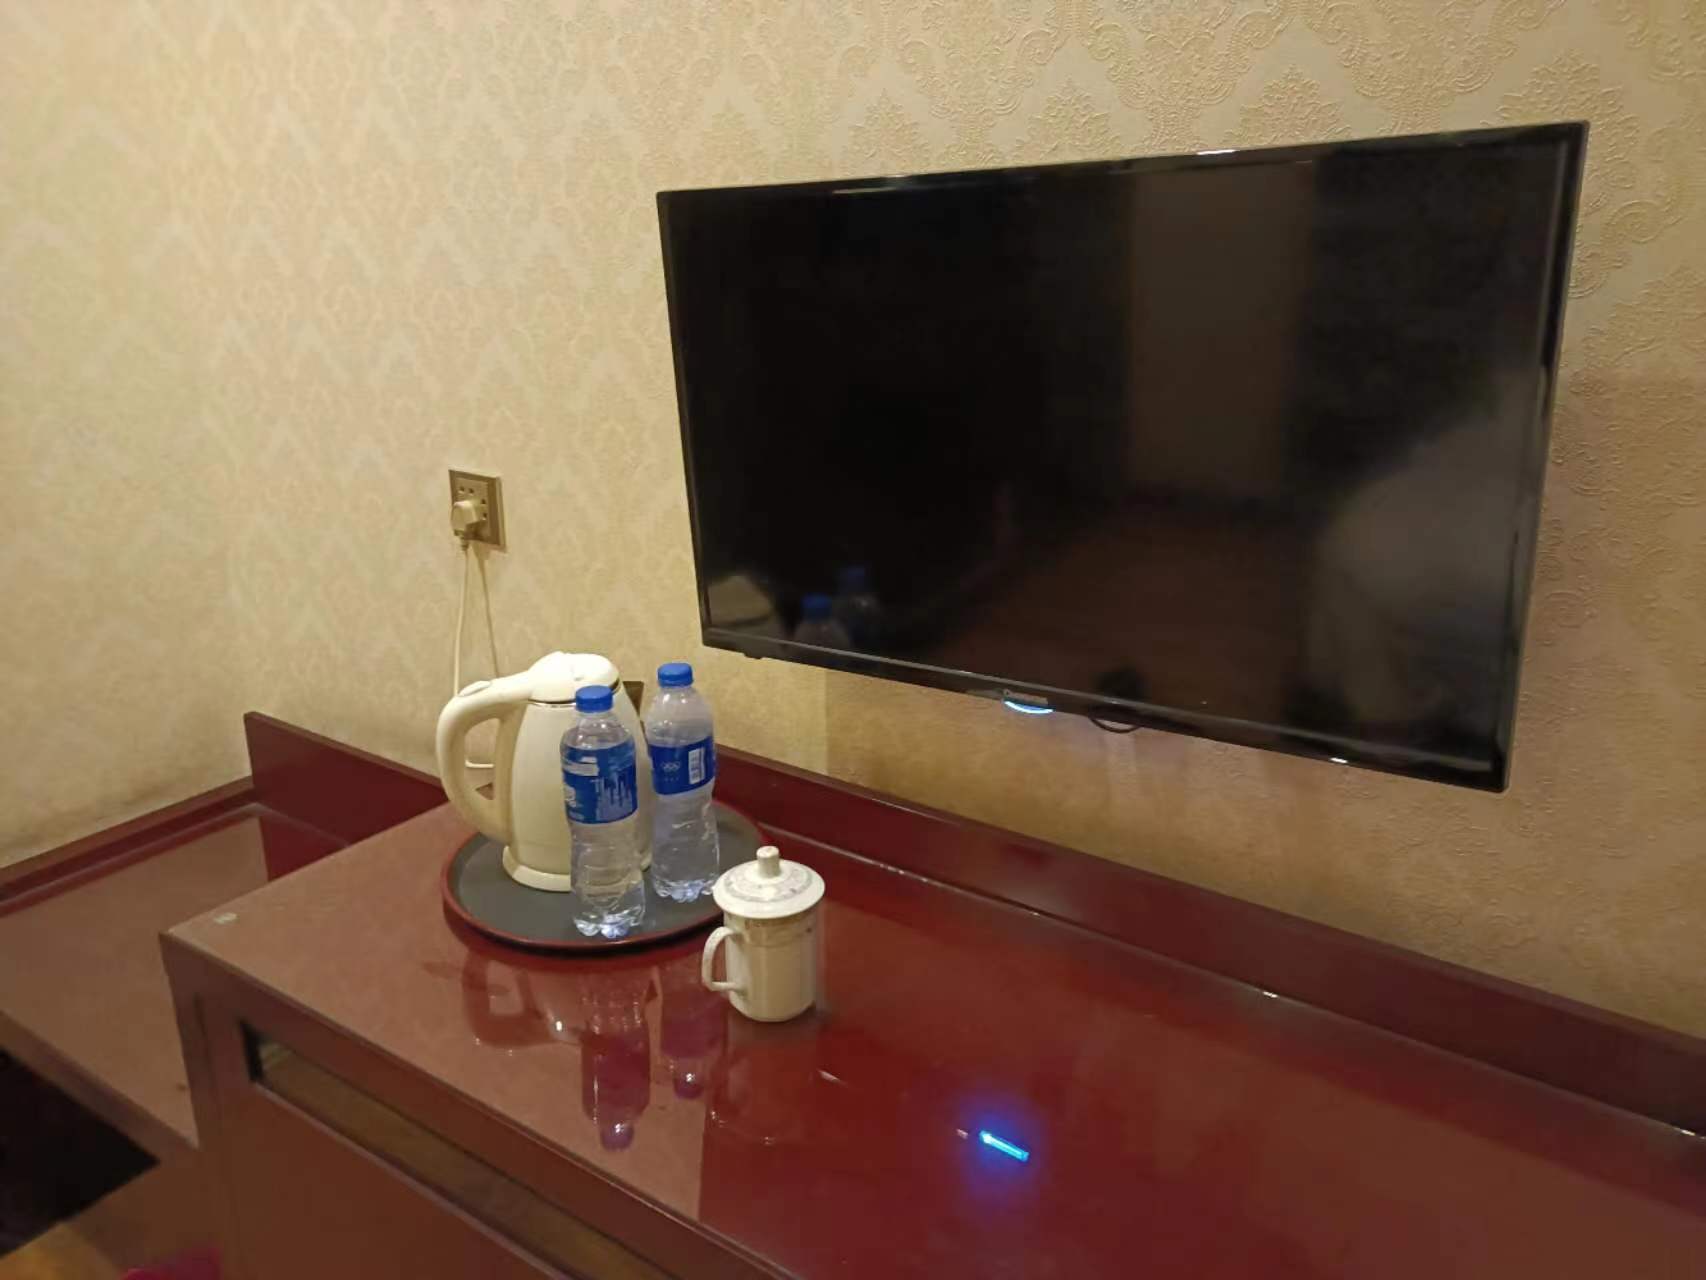 这家酒店的工作人员服务态度还不错，房间内设施比较齐全，有热水供应，酒店干净整洁，就是入住的这个房间空